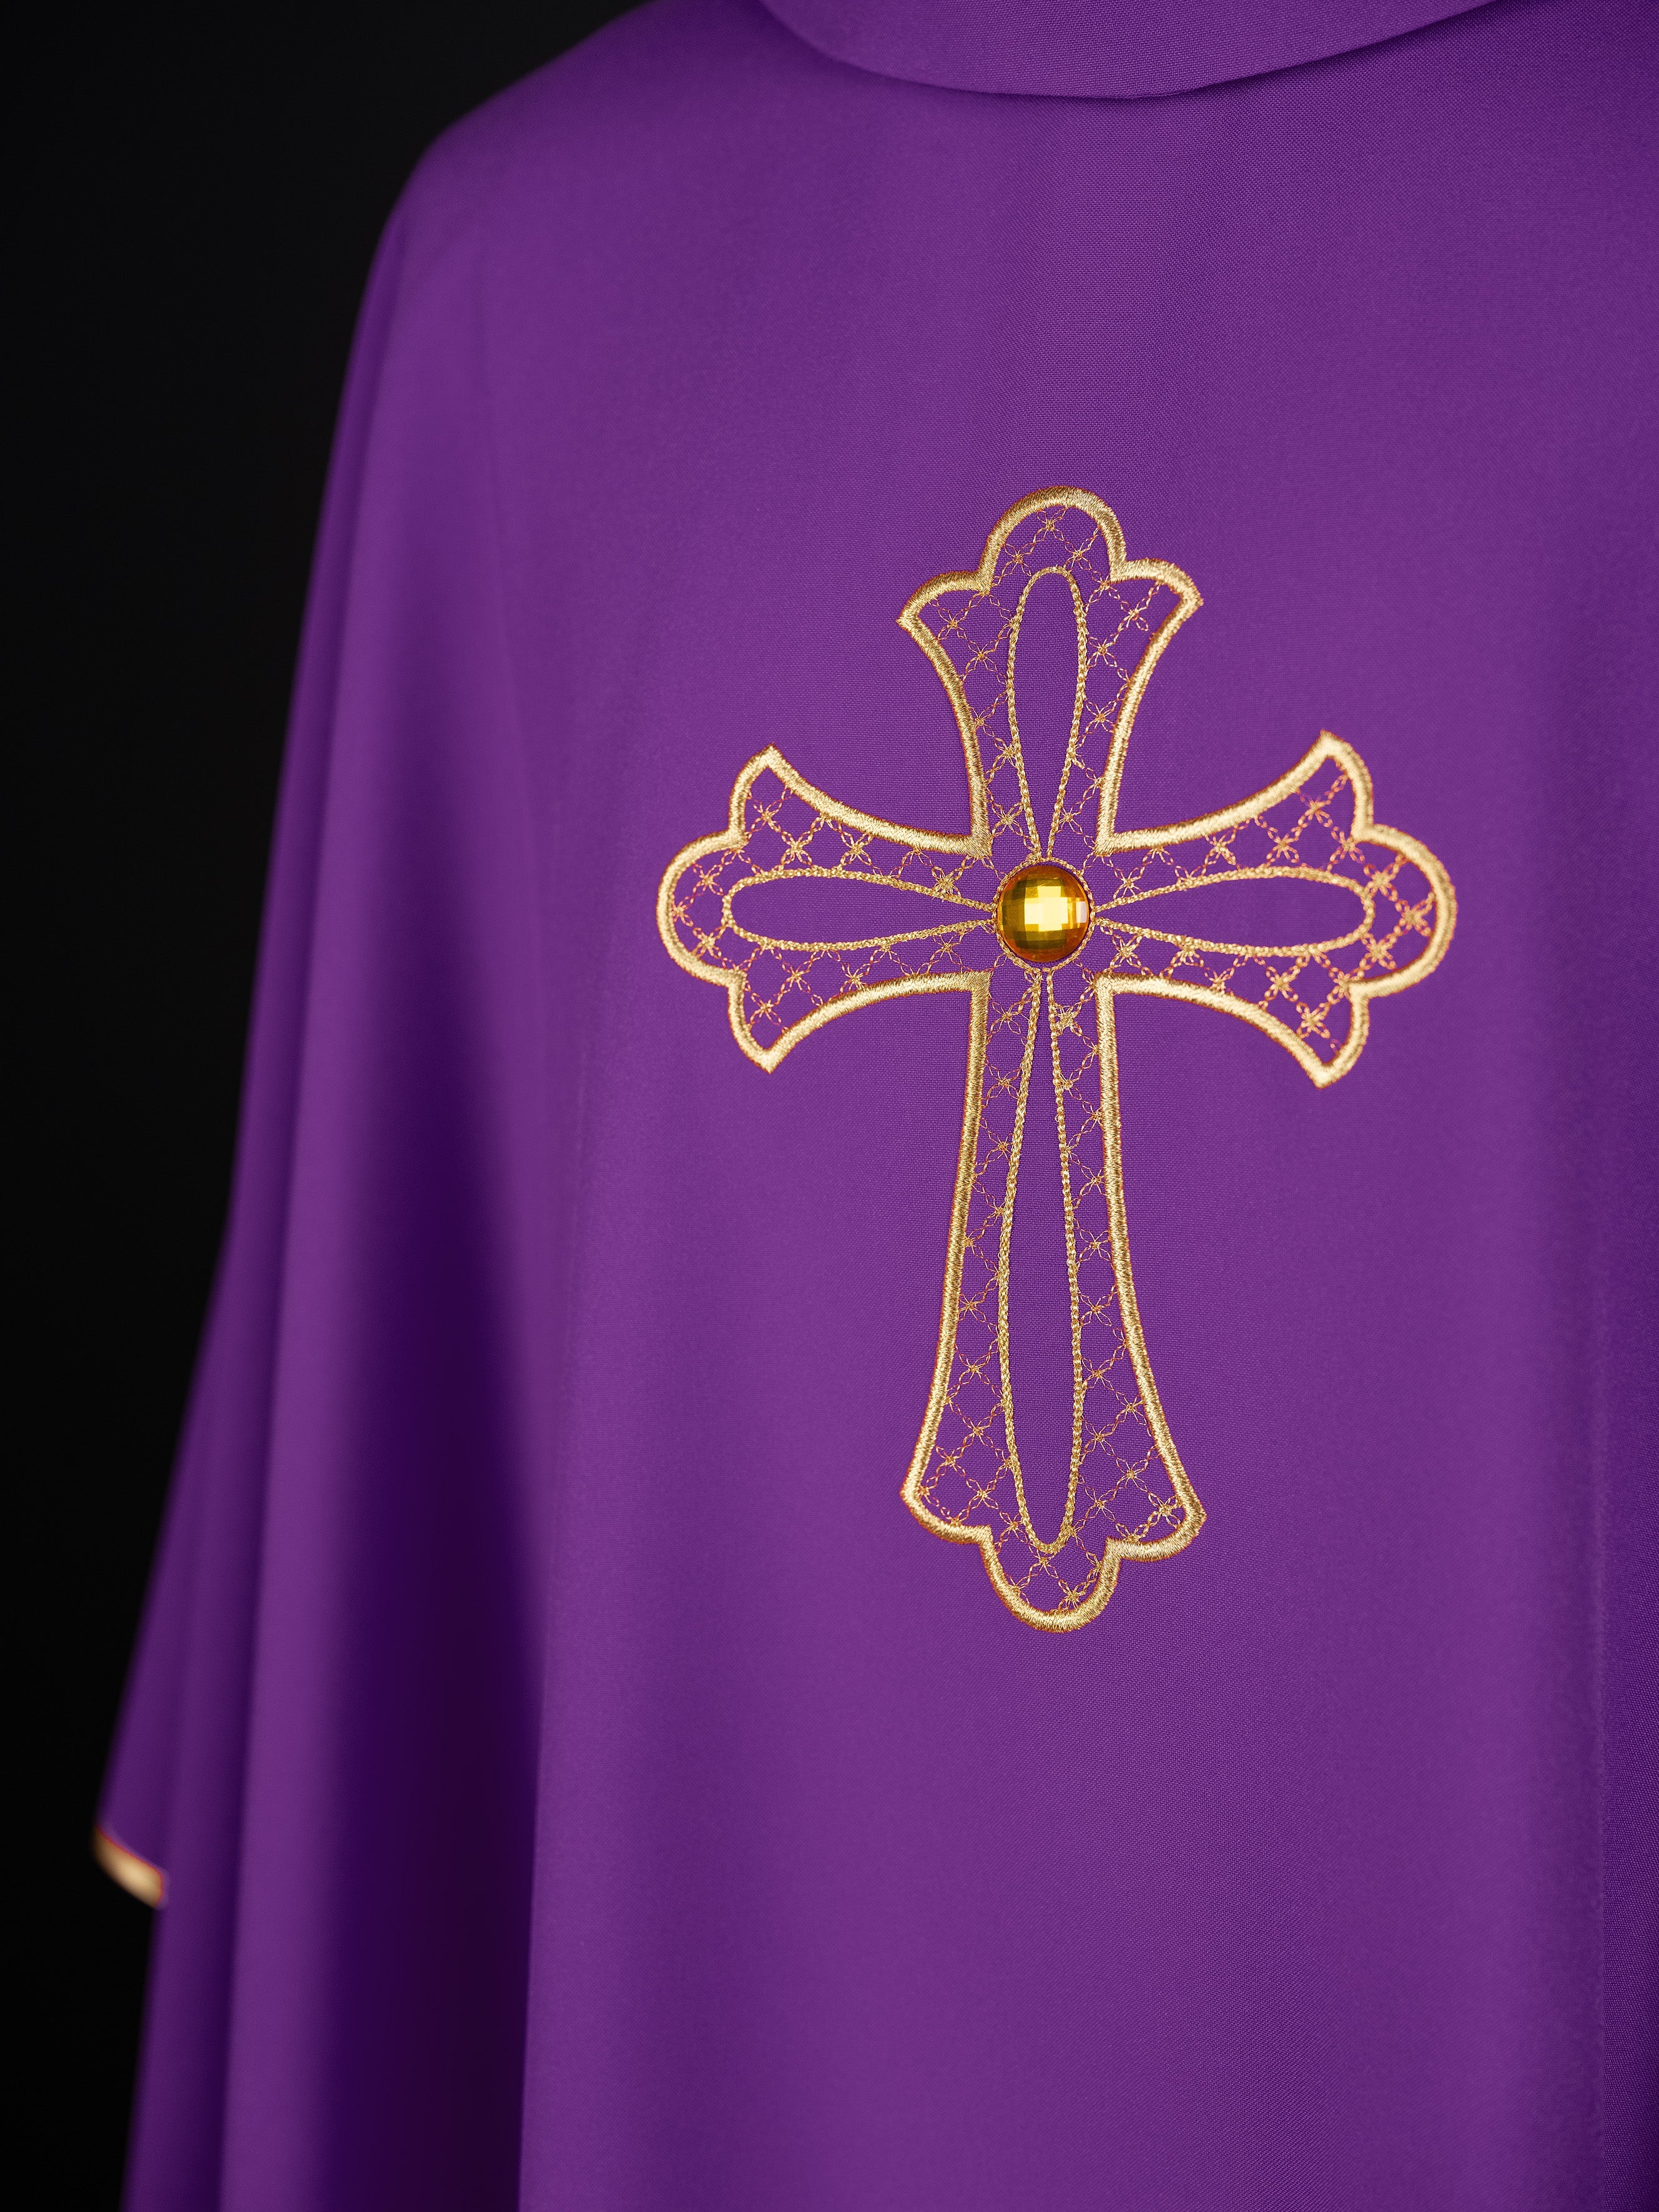 Fioletowy ornat haftowany z symbolem krzyża Fioletowy